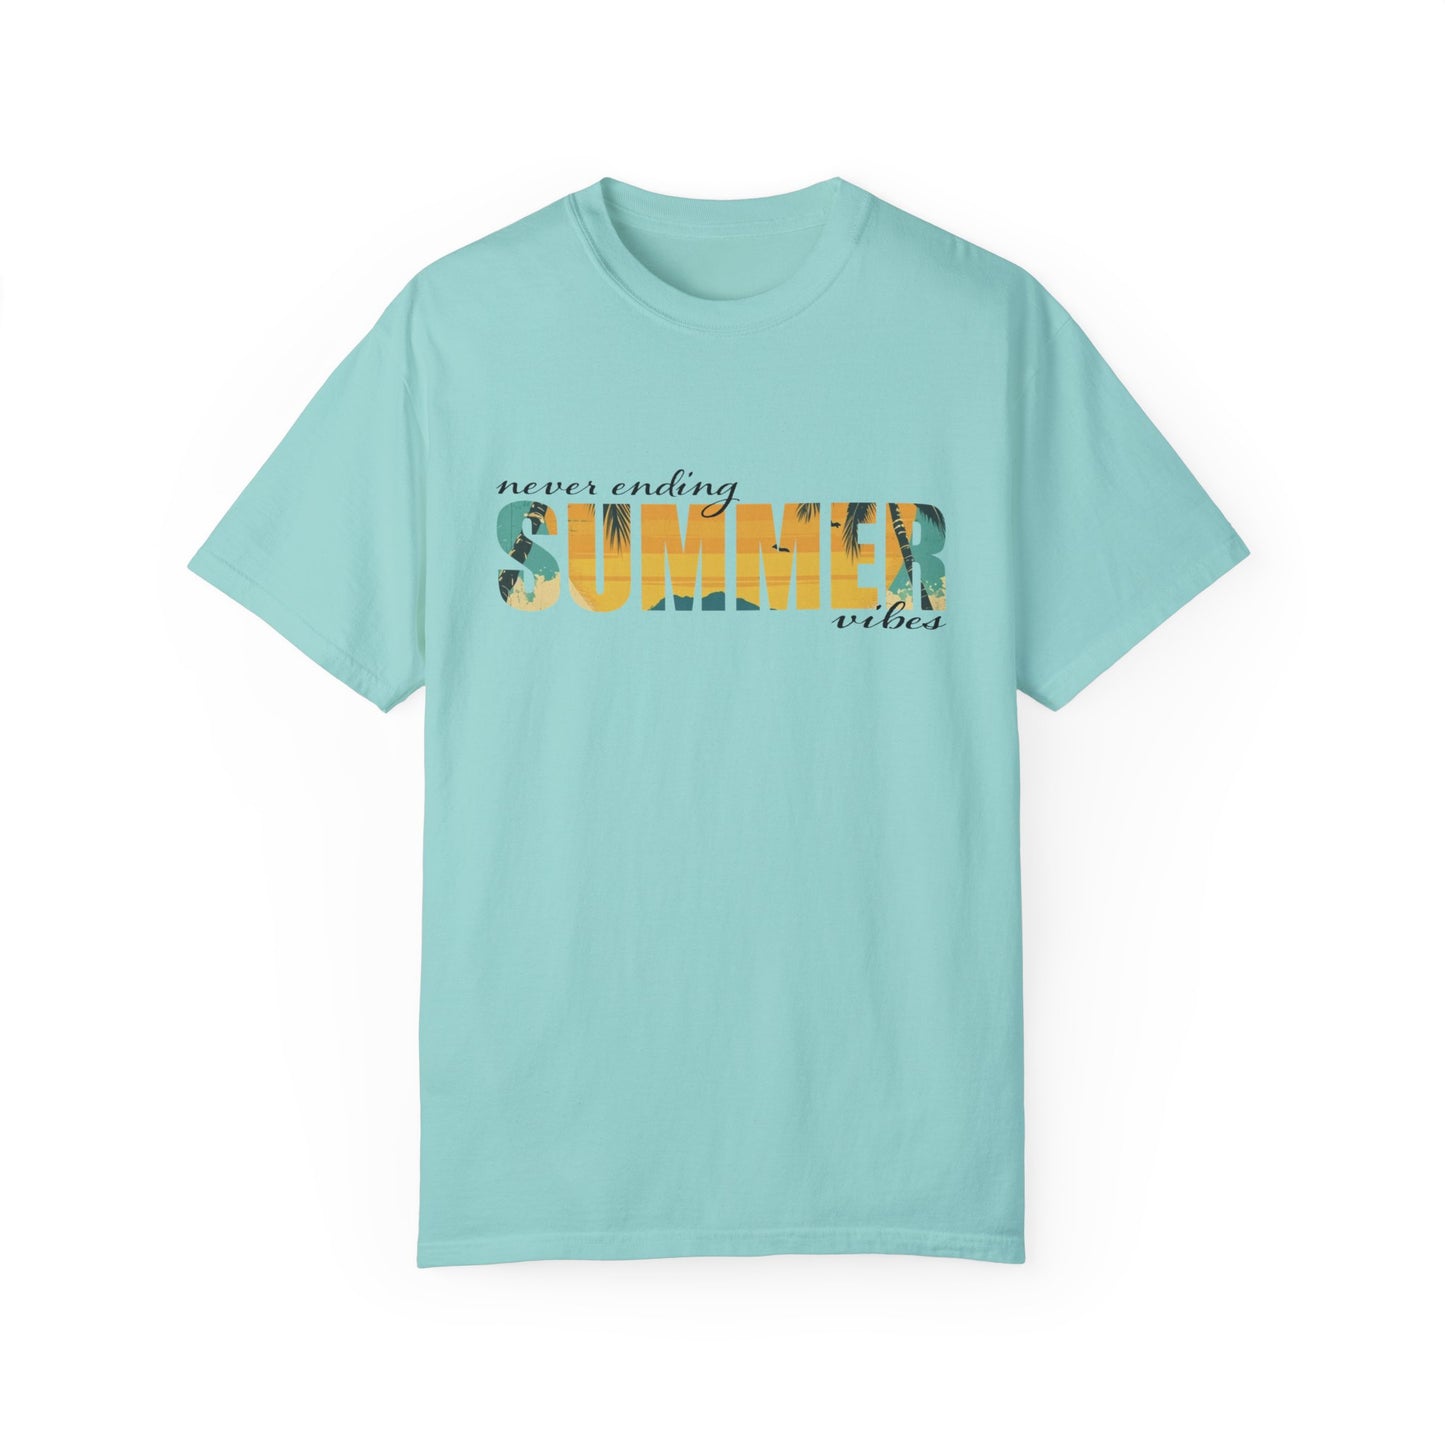 Never Ending Summer Vibes Shirt, Summer Shirt, Vacation Tee, Summer Vibes T-Shirt, Beach T Shirt, Summer Mom Shirt, Holiday Shirt